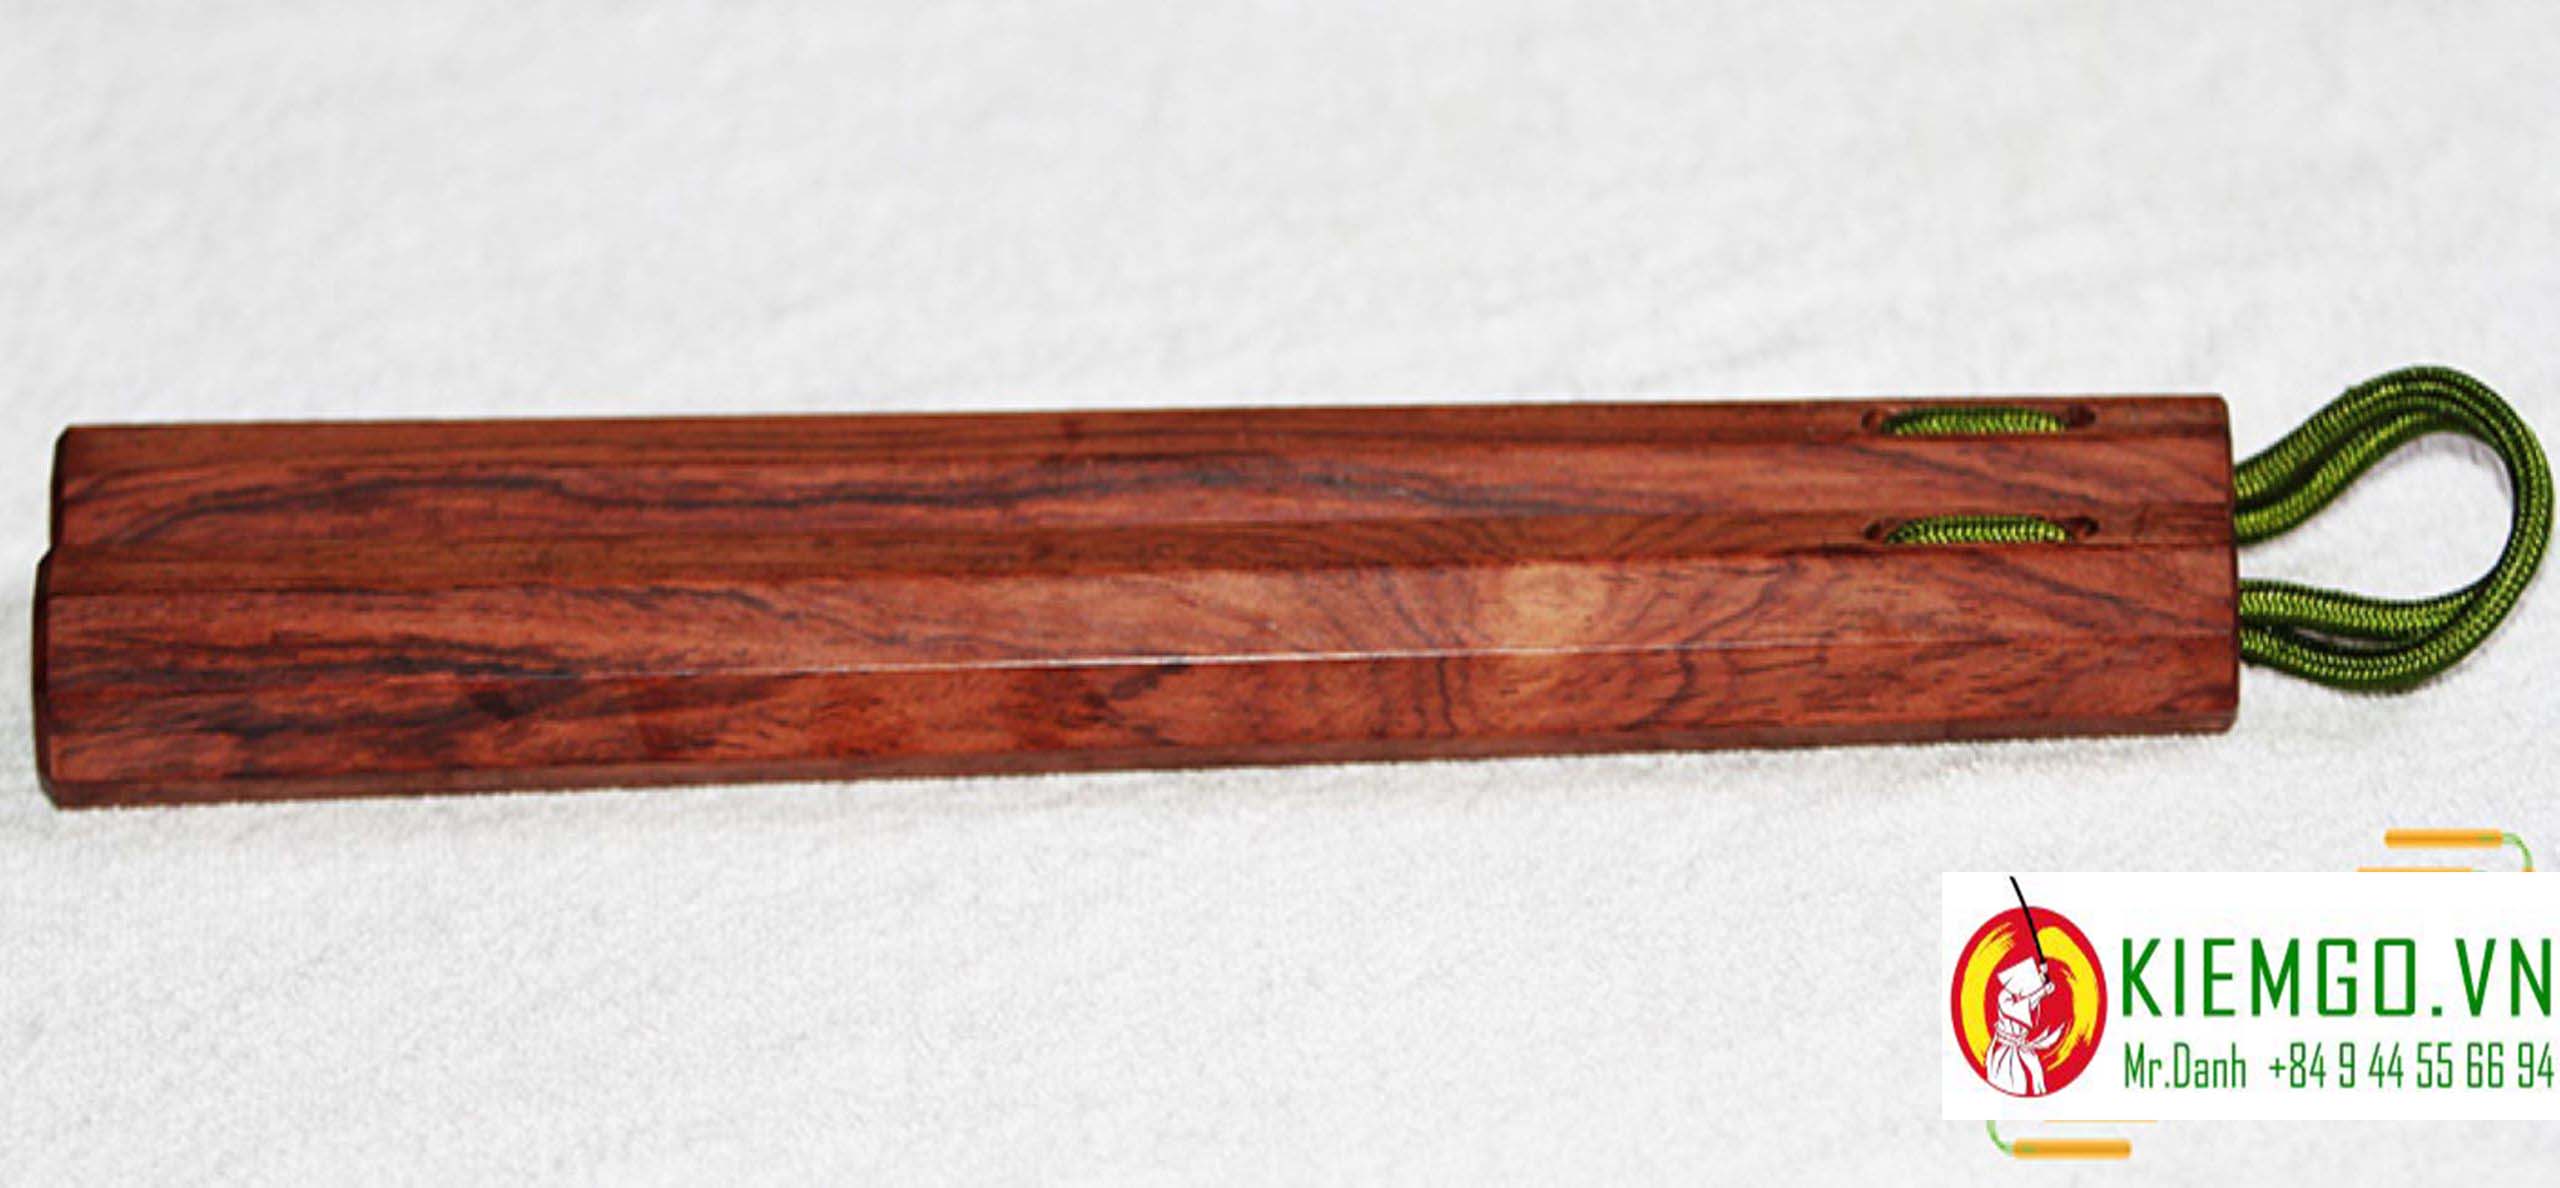 con-nhi-khuc-cam-chi côn nhị khúc gỗ cẩm chỉ là loại côn gỗ quý chất lượng của shop kiemgo.vn, vân gỗ và màu sắc gỗ đặc sắc, gia công chuẩn sắc nét tinh tế, kết hợp bởi dây dù xịn bền chắc dẻo dai